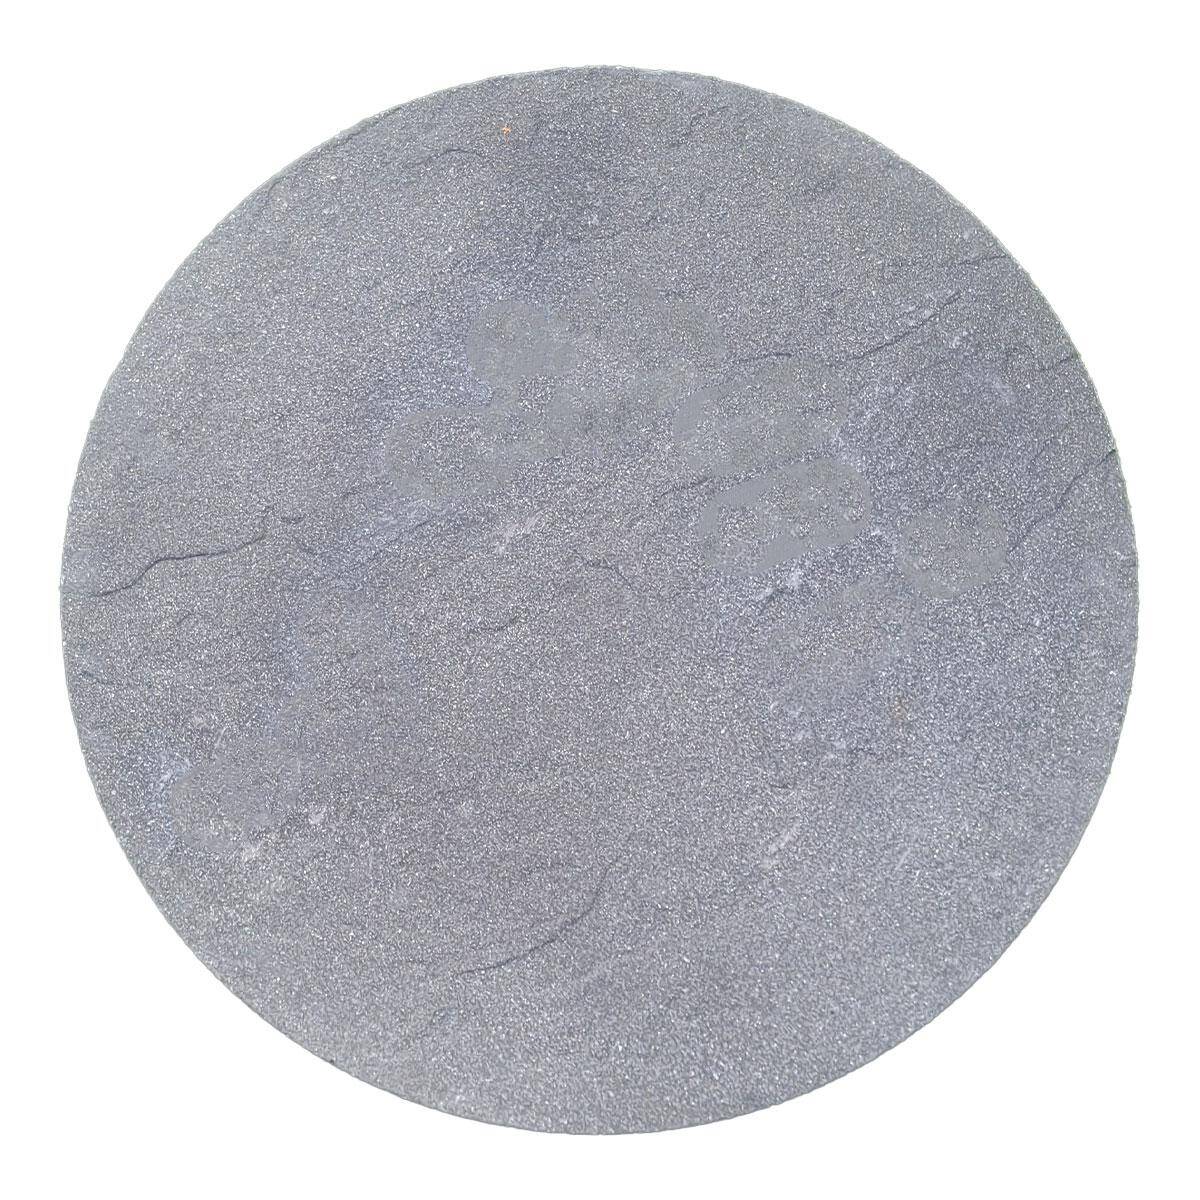 Płyta betonowa koło średnica 60 cm antracytowa Cidemat Betrix BK 602 